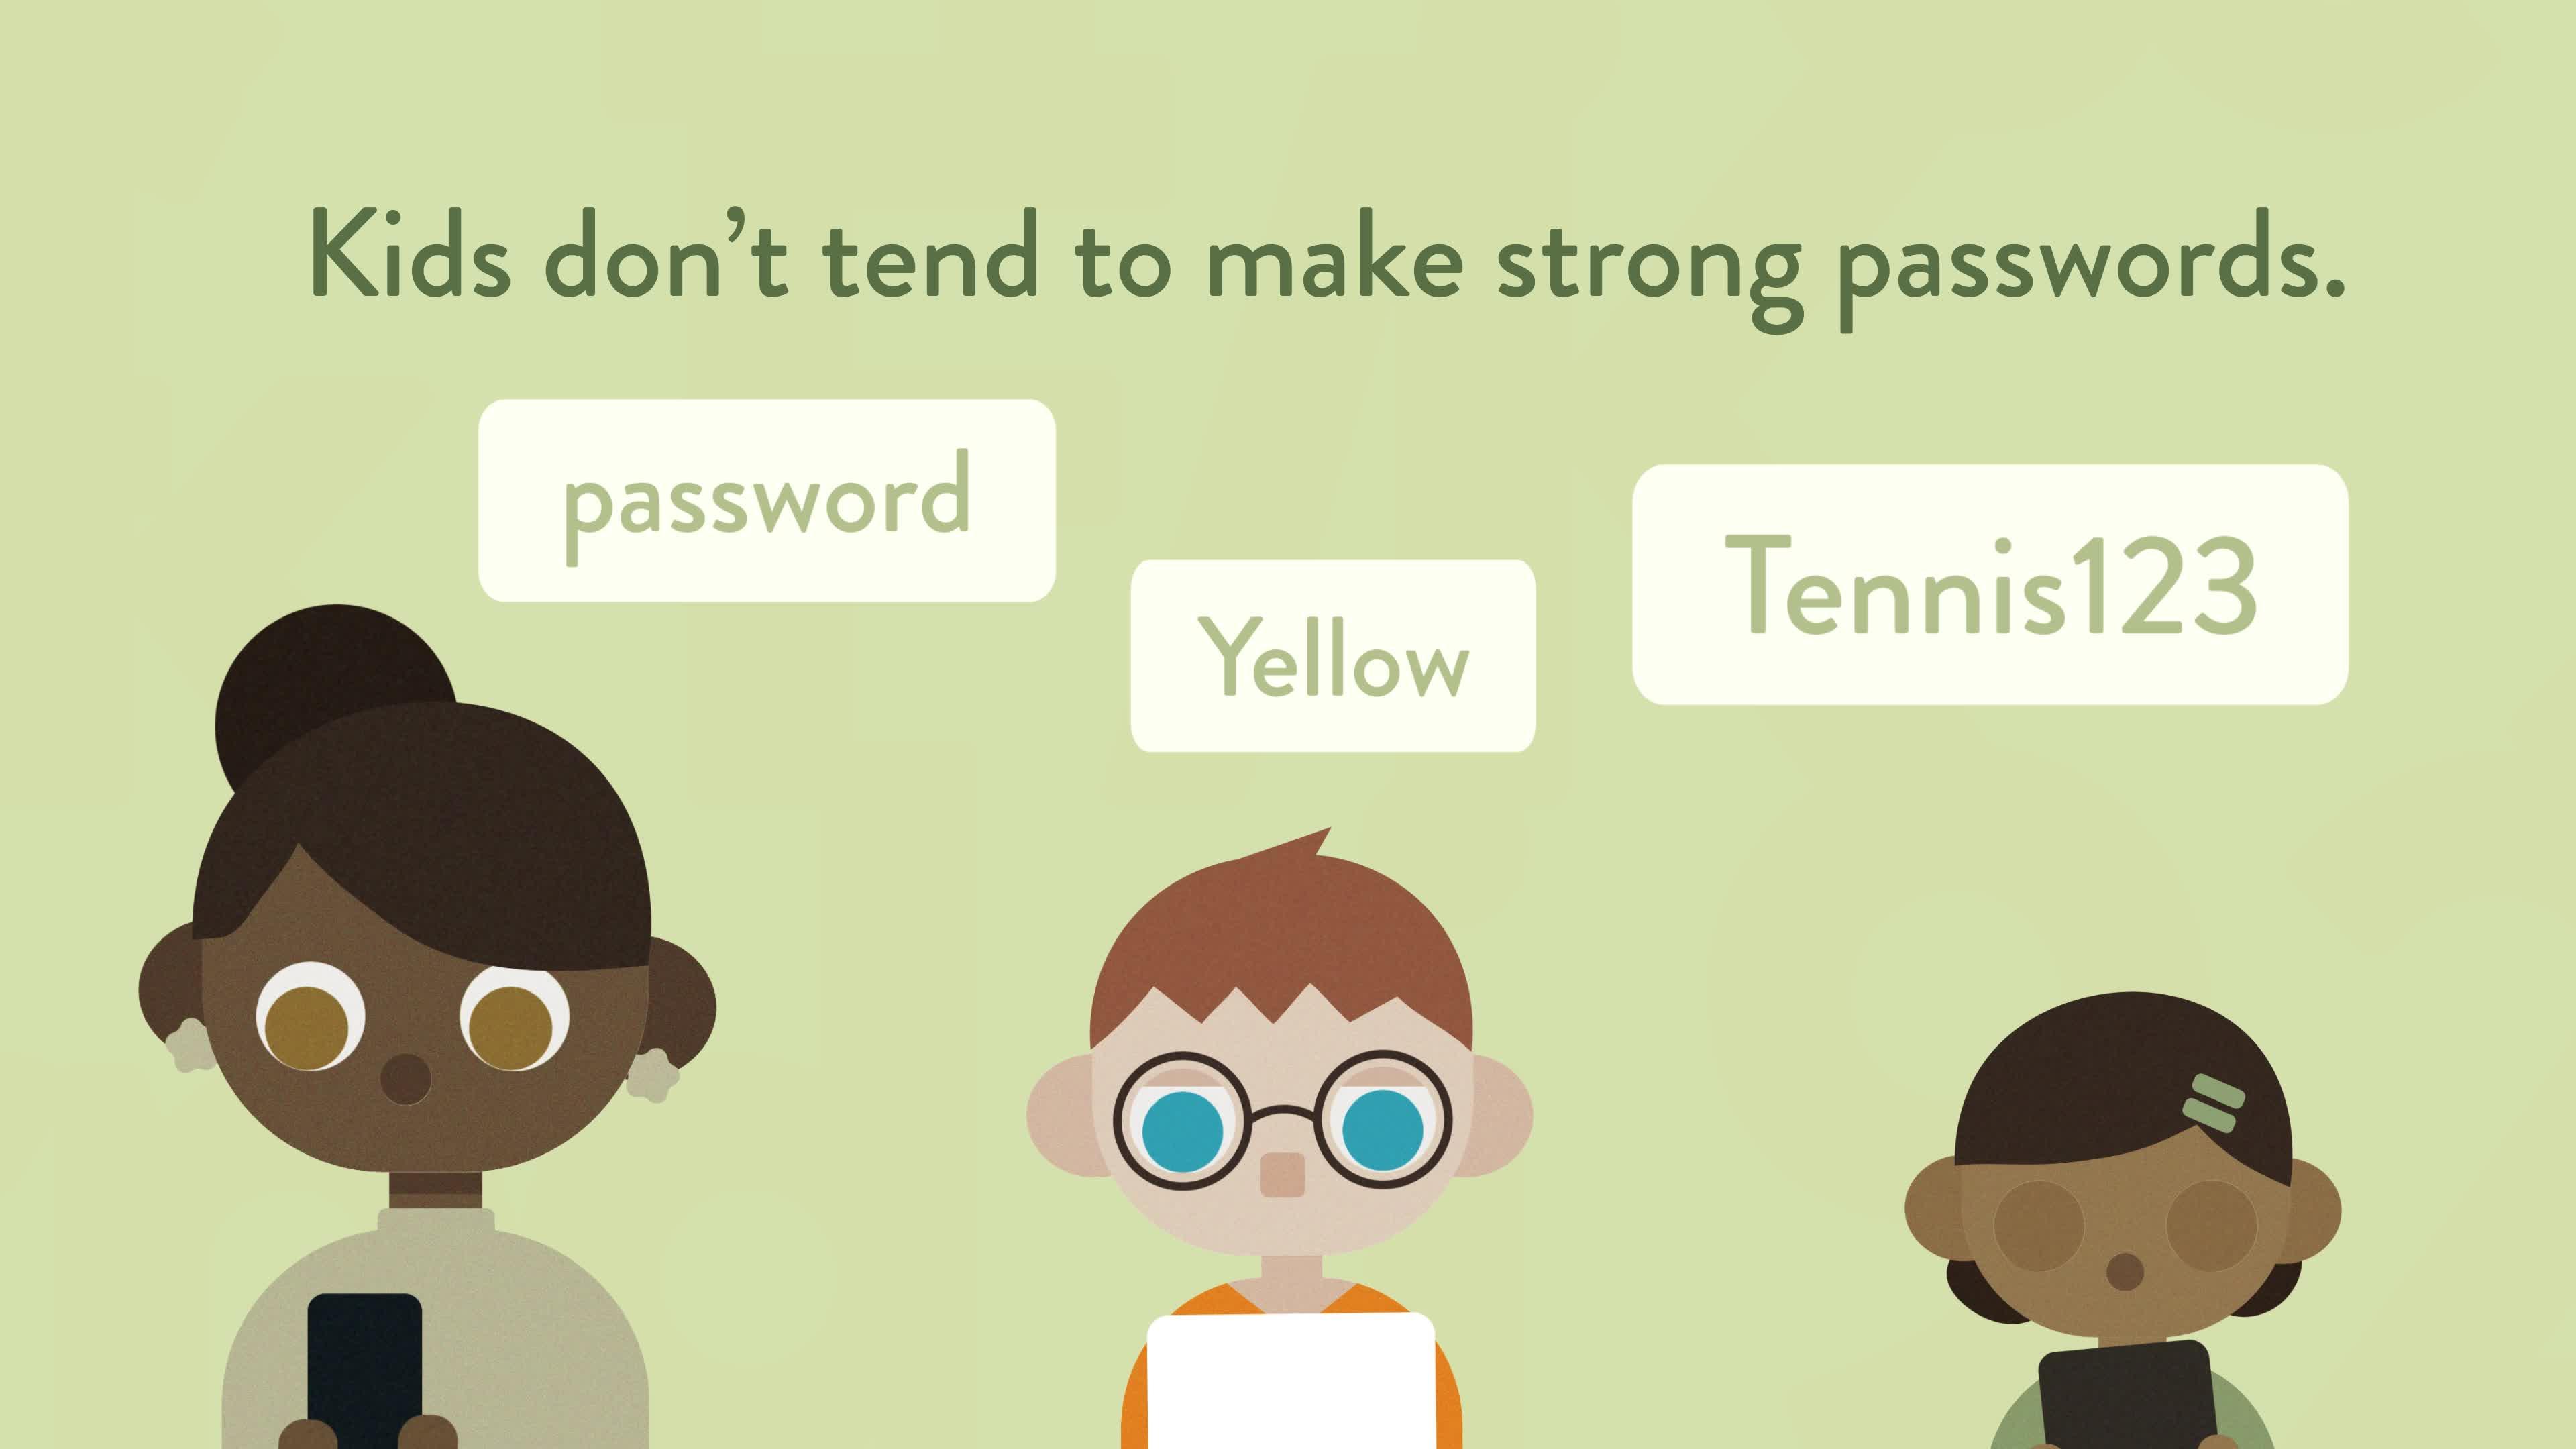 NIST Study on Kids’ Passwords Shows Gap Between Knowledge of Password Best Practices and Behavior